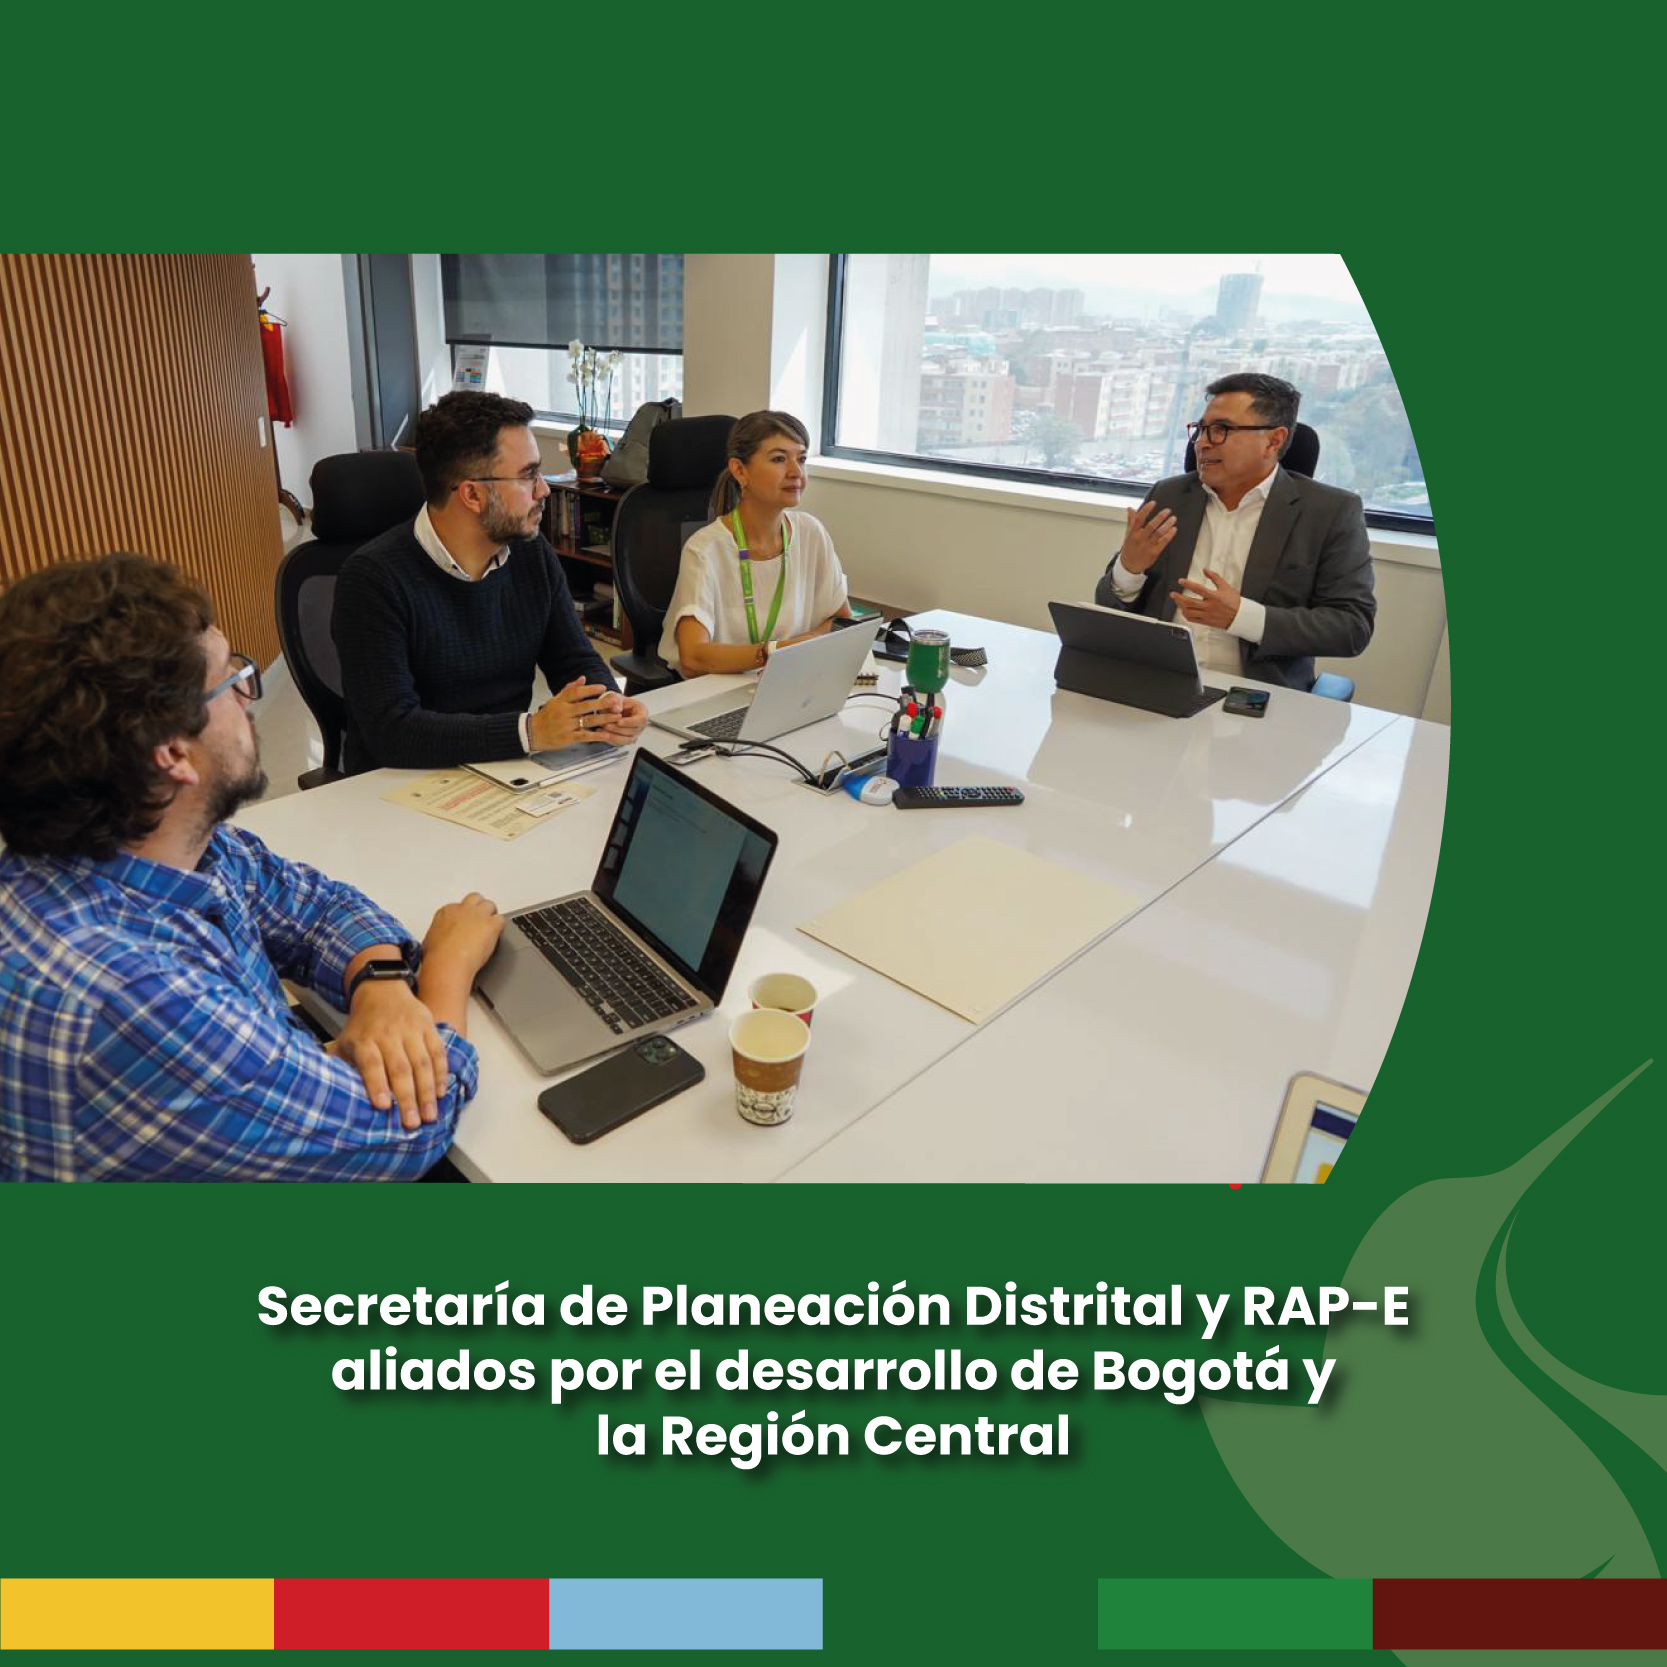 Secretaría de Planeación Distrital y RAP-E, aliados por el desarrollo de Bogotá y la Región Central